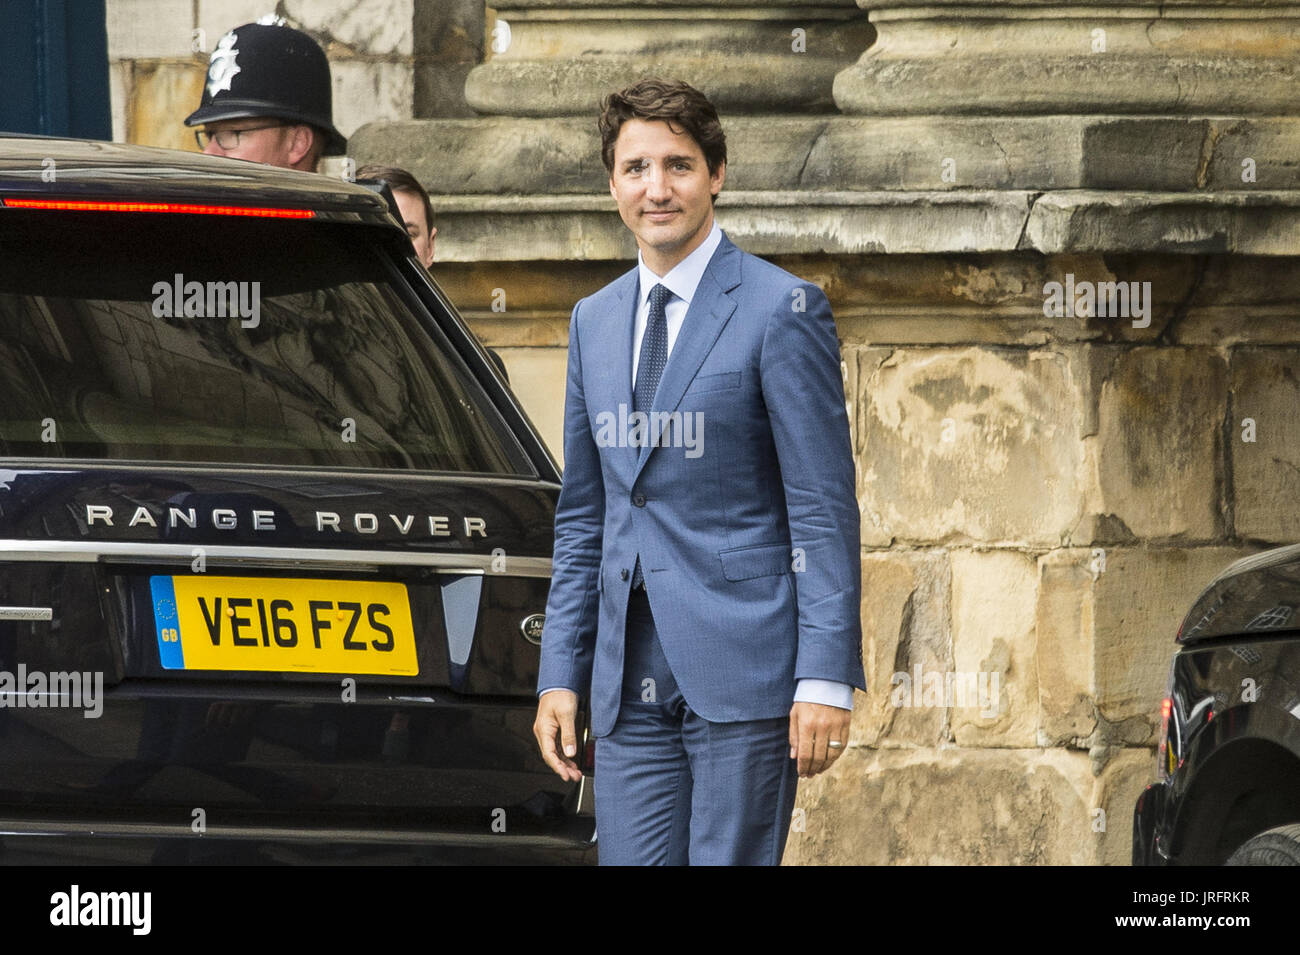 Der kanadische Premierminister verlässt nach einem Treffen mit Königin Elzabeth II in Edinburgh Holyrood Palace.  Mitwirkende: Justin Trudeau wo: Edinburgh, Vereinigtes Königreich bei: Kredit-5. Juli 2017: Euan Cherry/WENN.com Stockfoto